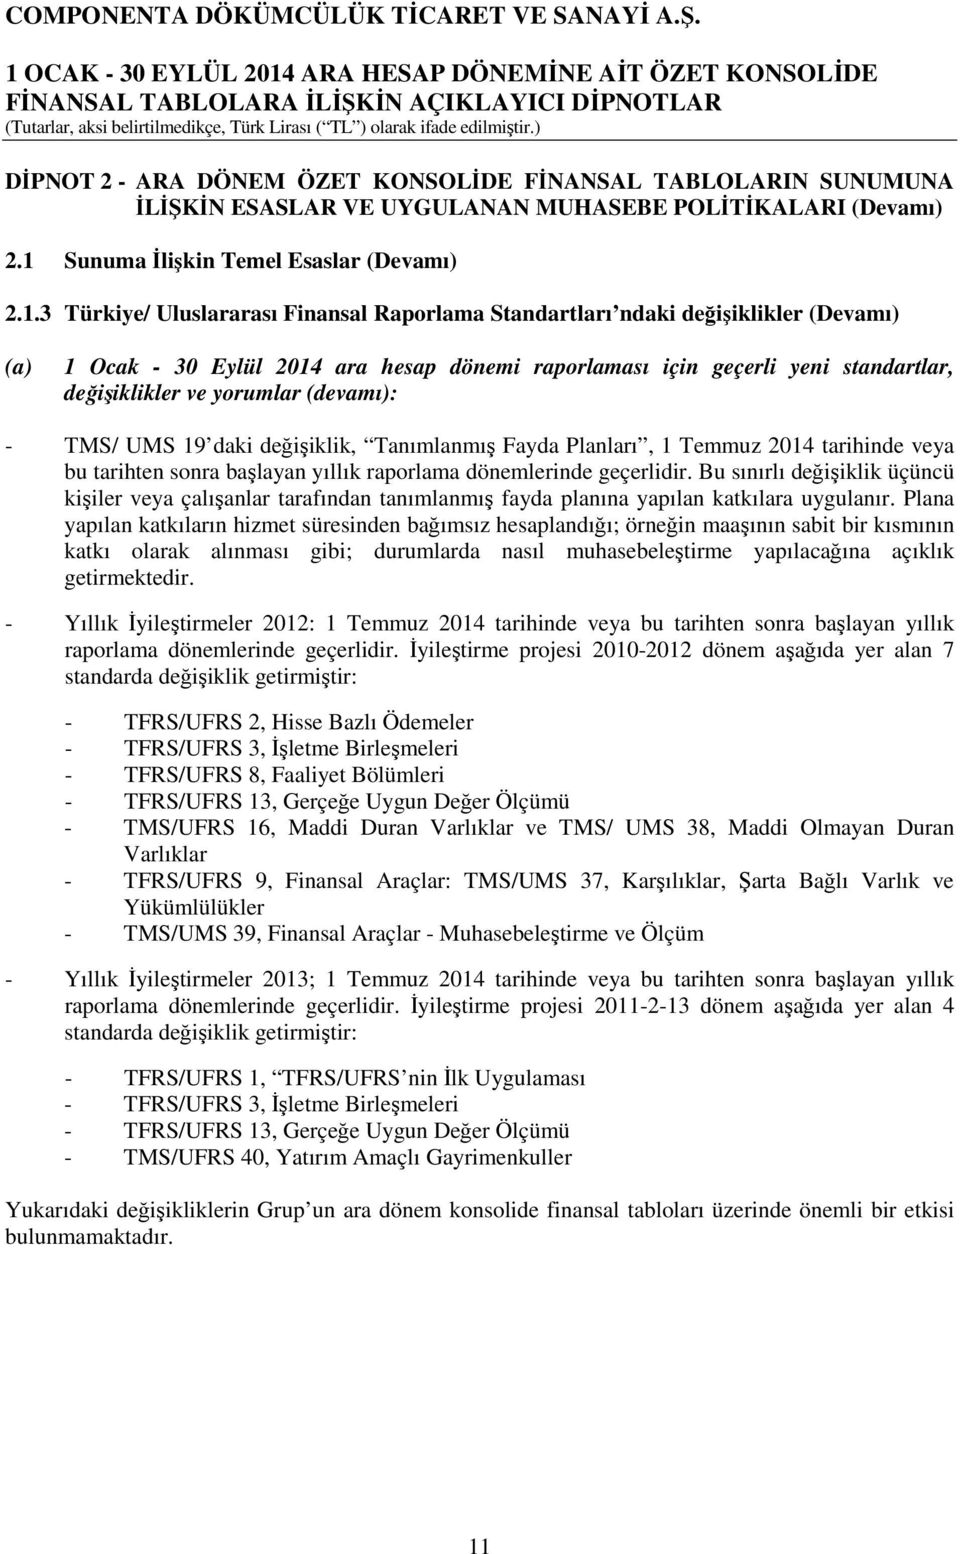 3 Türkiye/ Uluslararası Finansal Raporlama Standartları ndaki değişiklikler (Devamı) (a) 1 Ocak - 30 Eylül 2014 ara hesap dönemi raporlaması için geçerli yeni standartlar, değişiklikler ve yorumlar